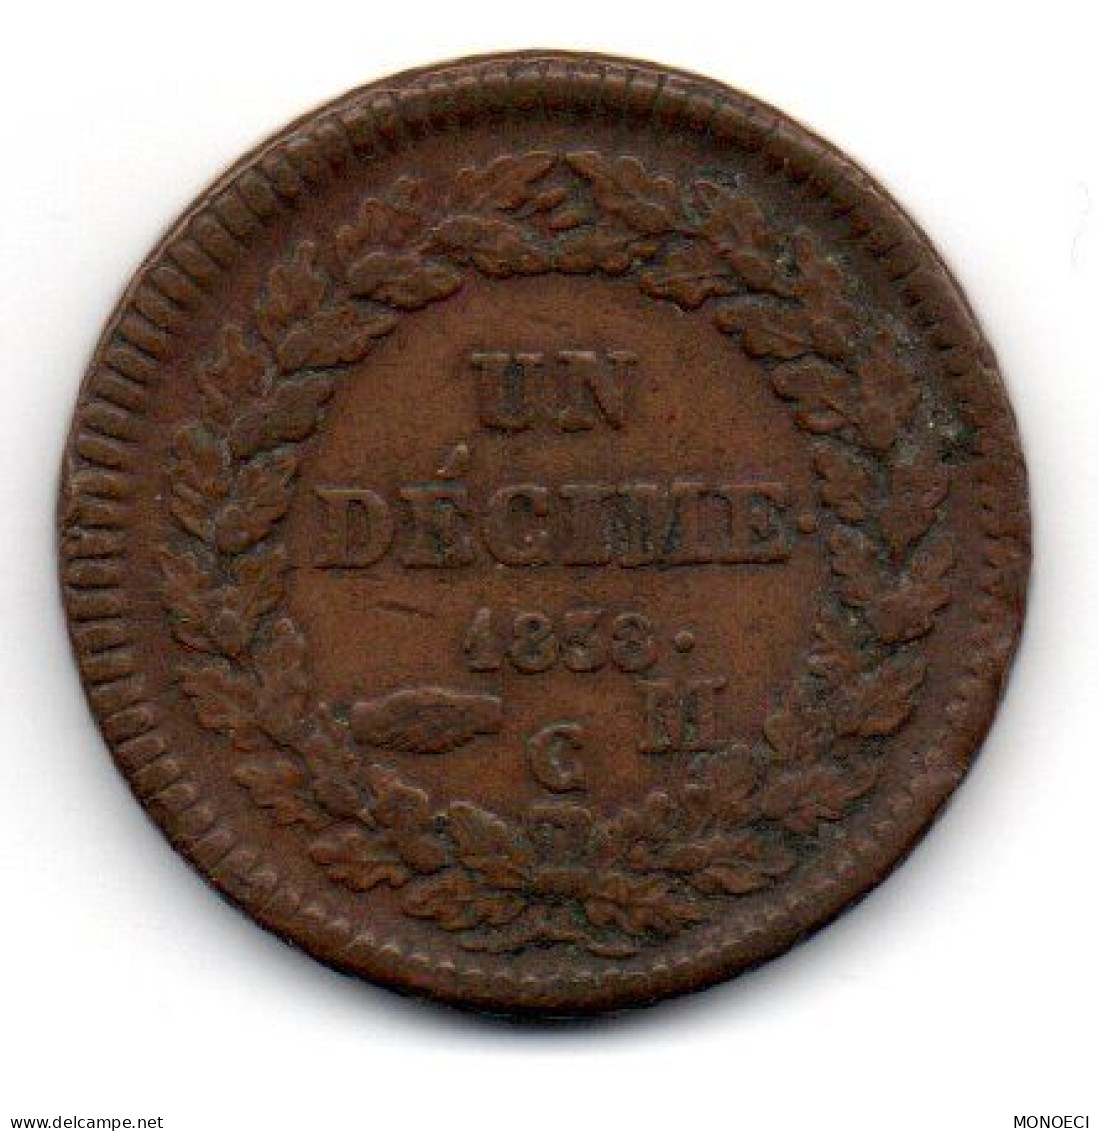 MONACO -- MONTE CARLO -- Pièce Bronze De UN Décime Honoré V - 1819-1922 Honoré V, Charles III, Albert I